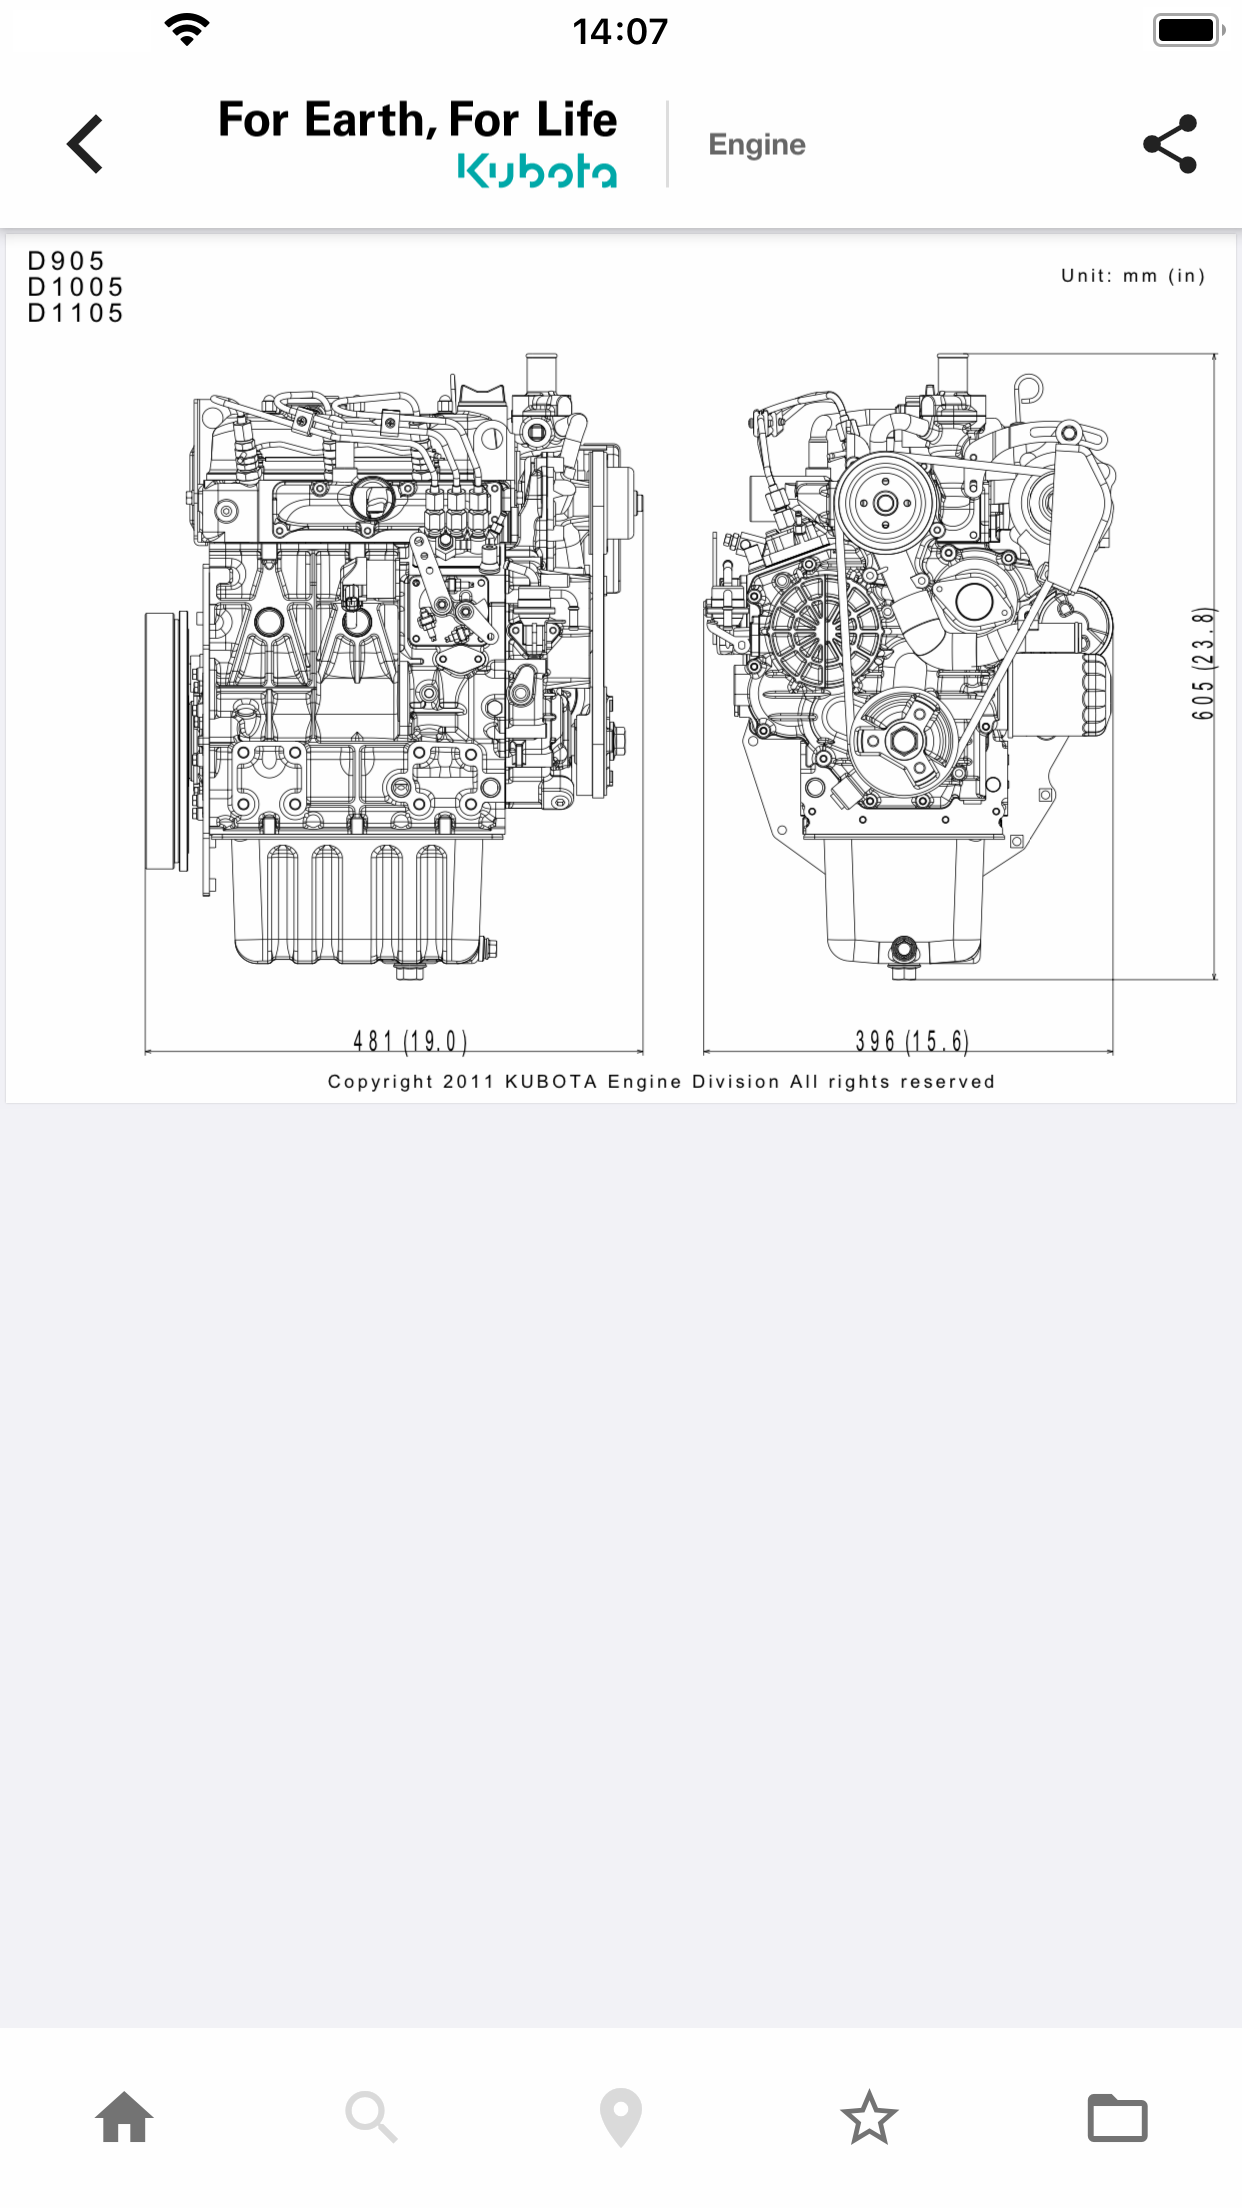 Images of Kubota Engine Catalogue App 03